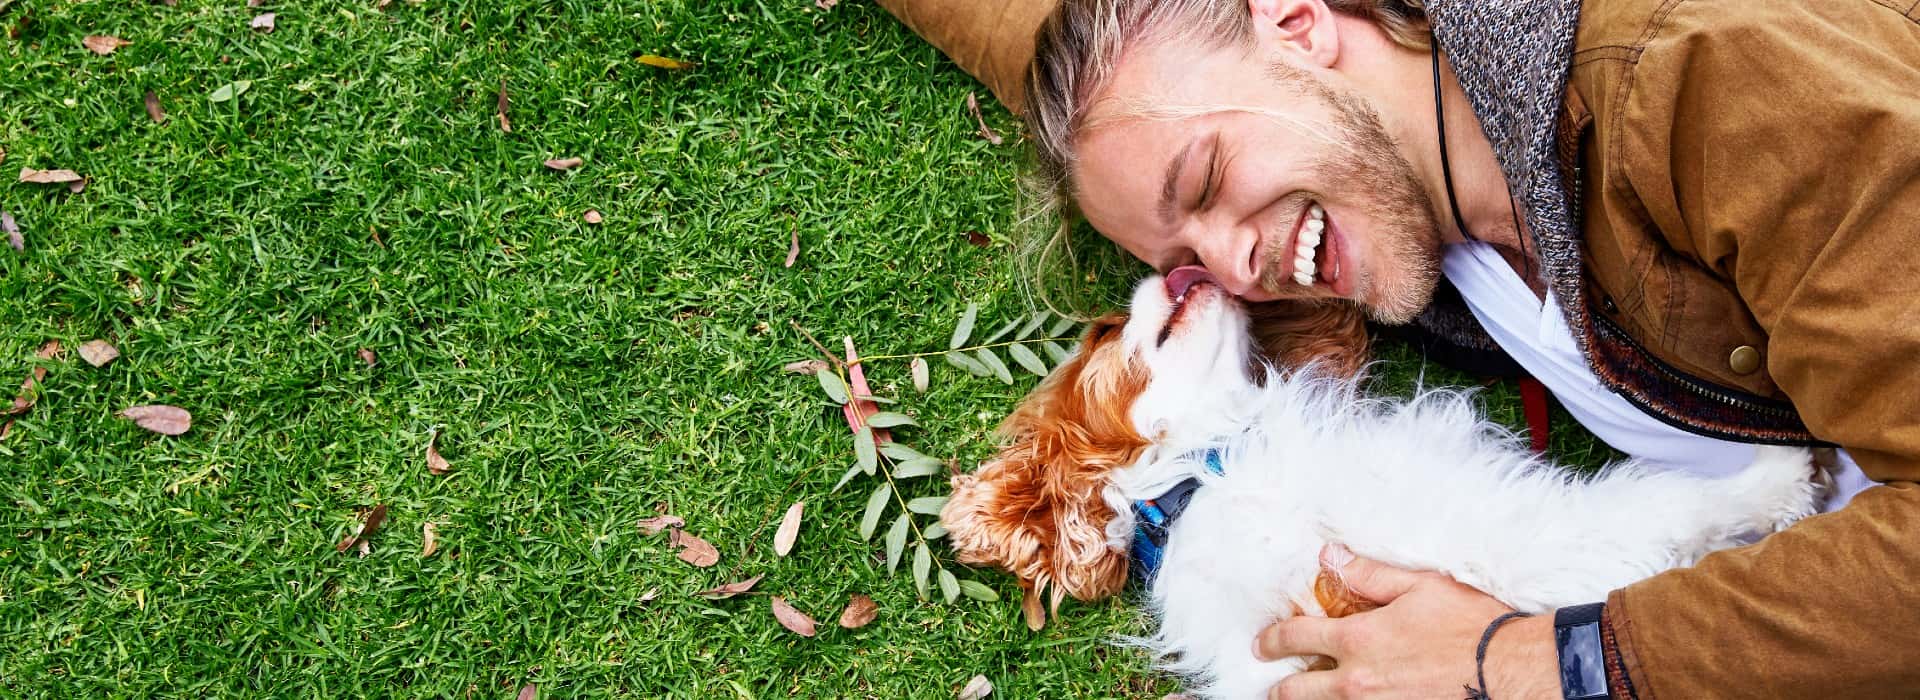 一个人躺在草地上，带着一只棕白色的小狗. 狗在舔男人的脸，男人在笑.